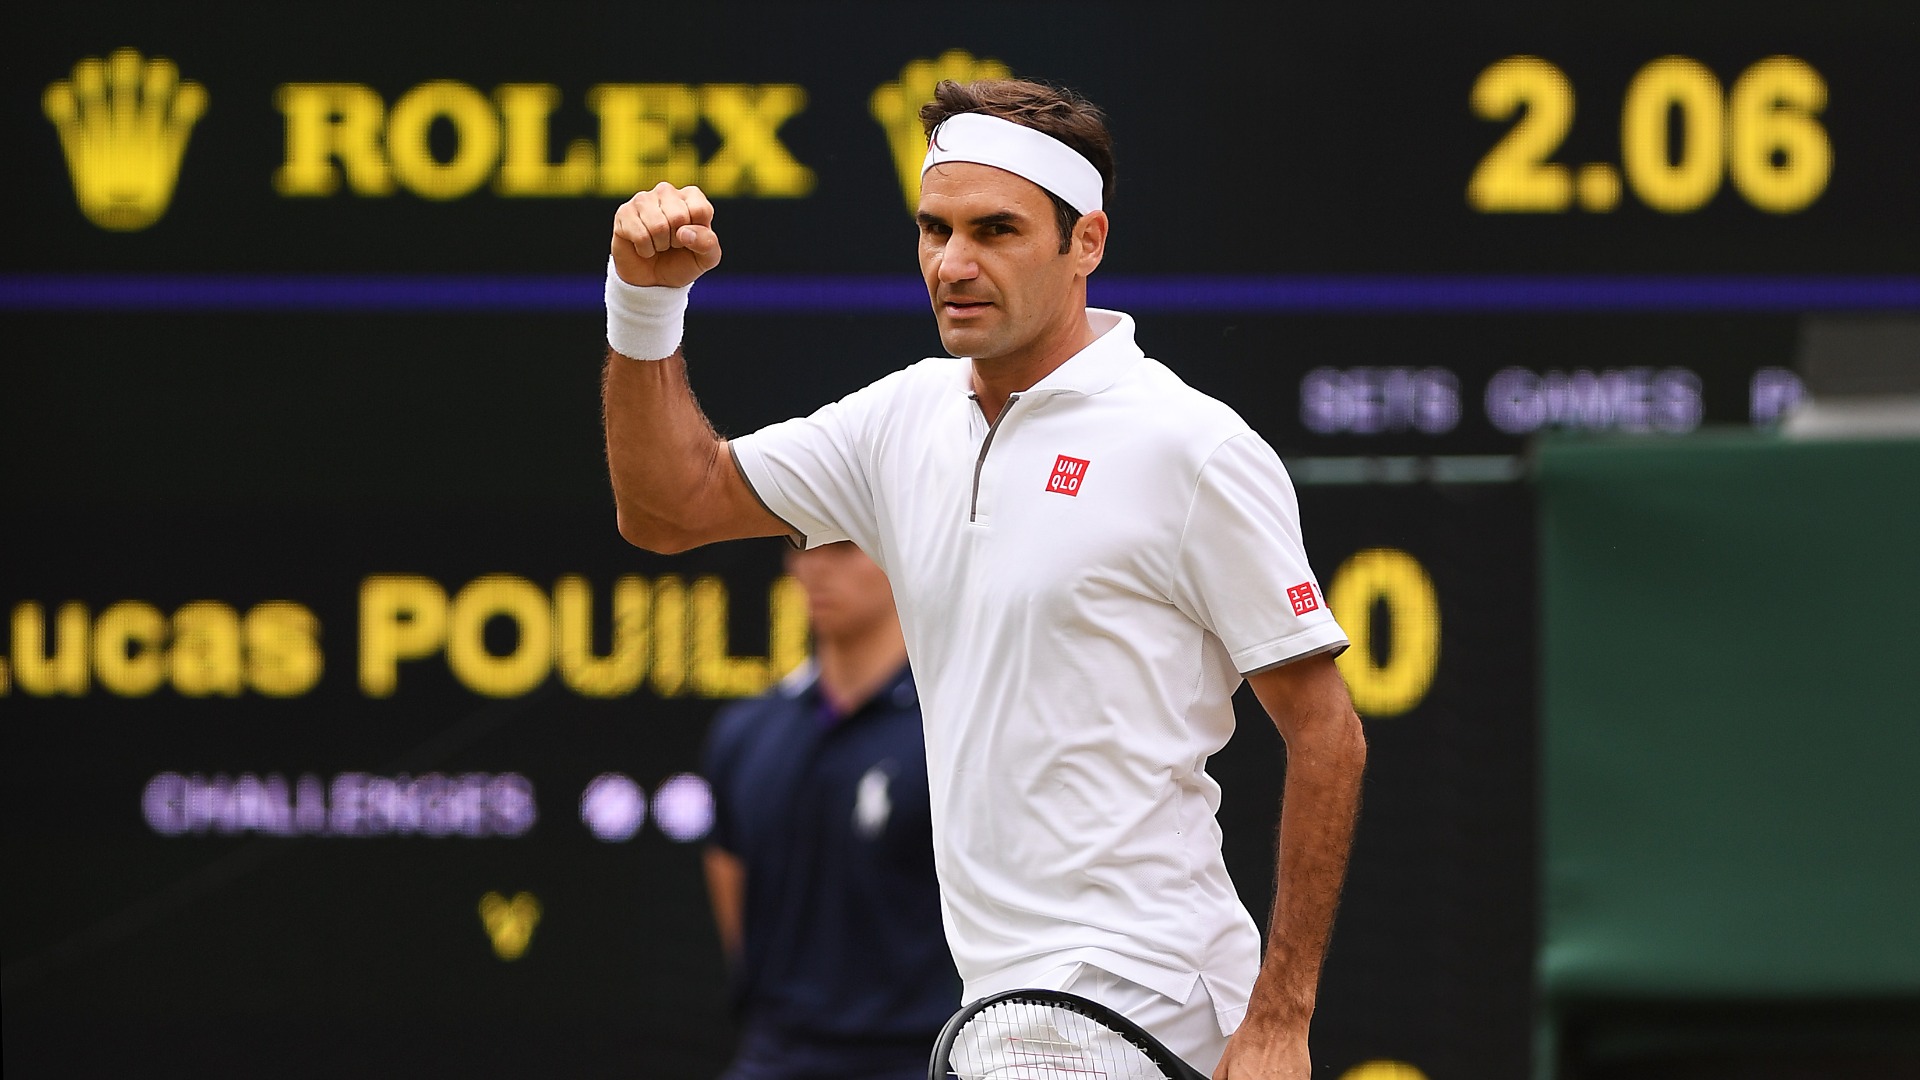 Wimbledon: Roger Federer hits grand slam landmark | Sporting News1920 x 1080